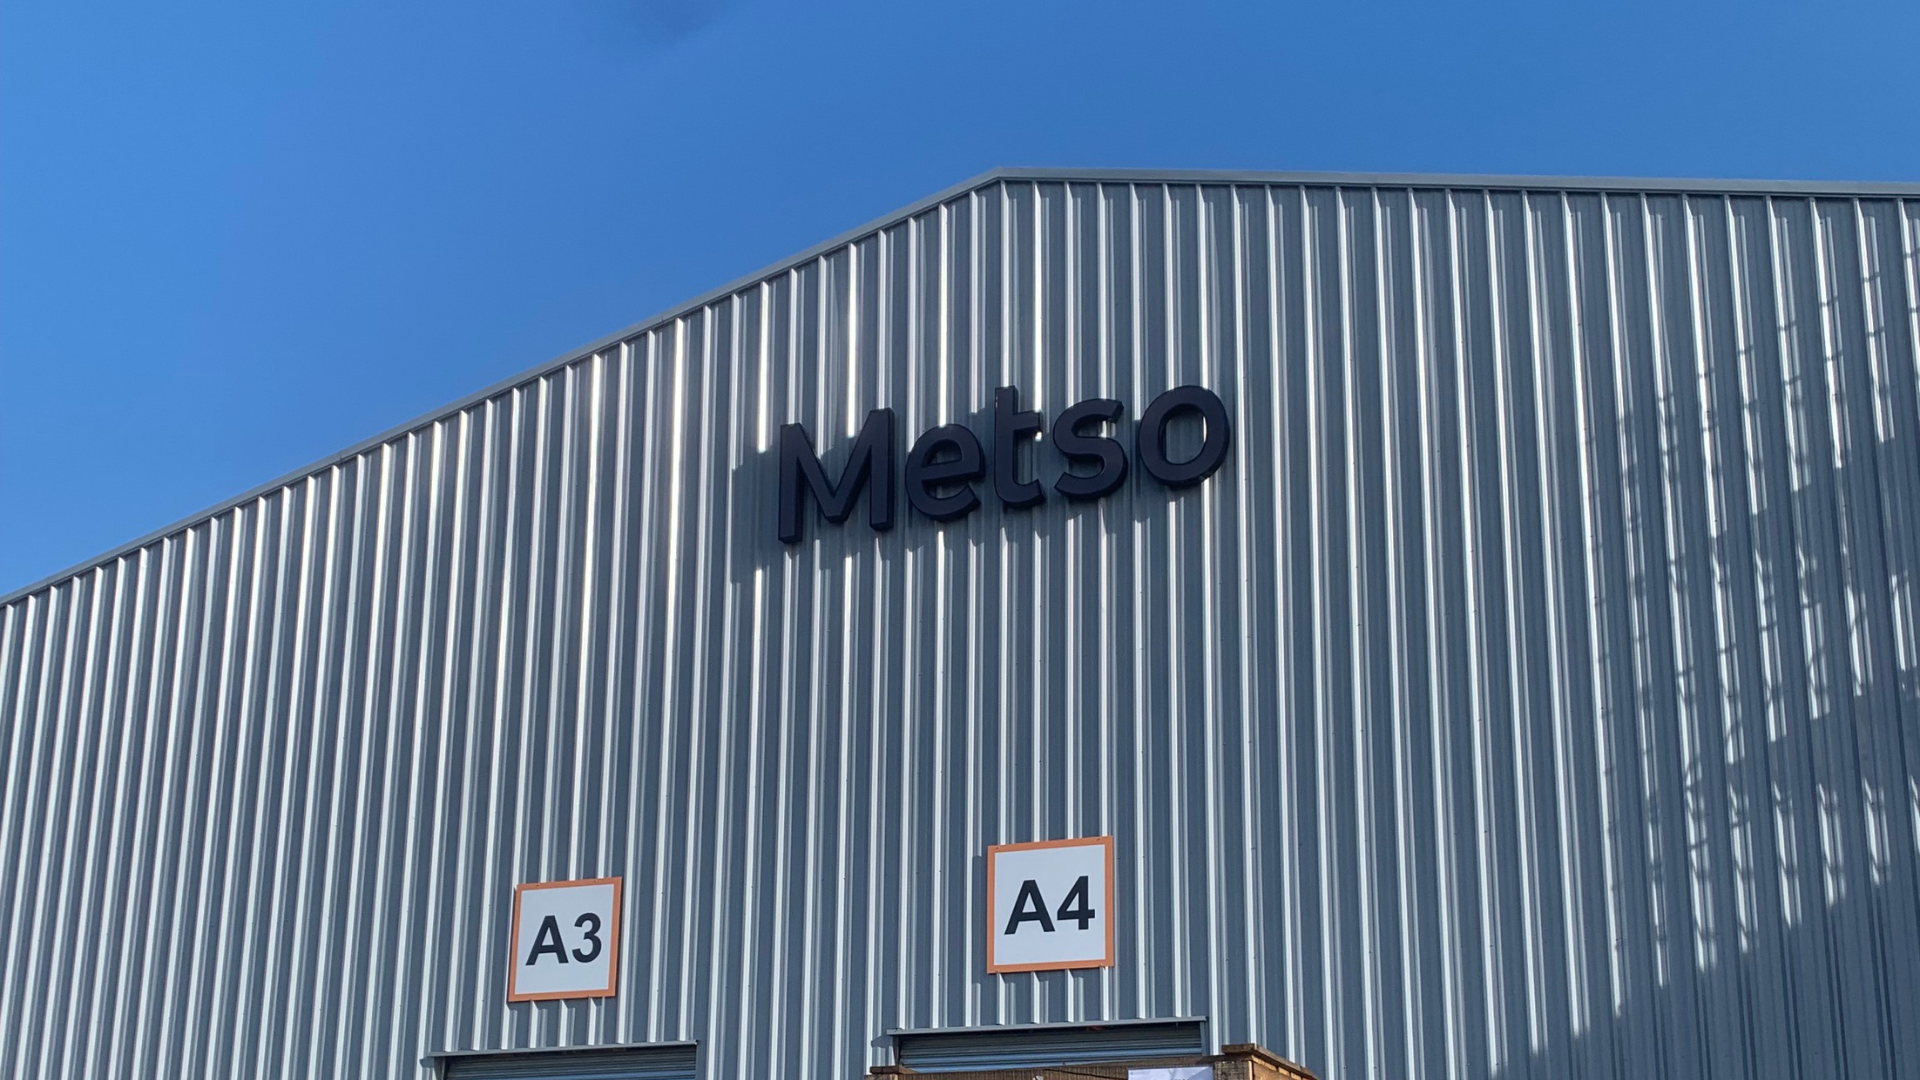 Metso aumenta sus capacidades logísticas y de distribución en Chile pone en operación nuevo centro de distribución.